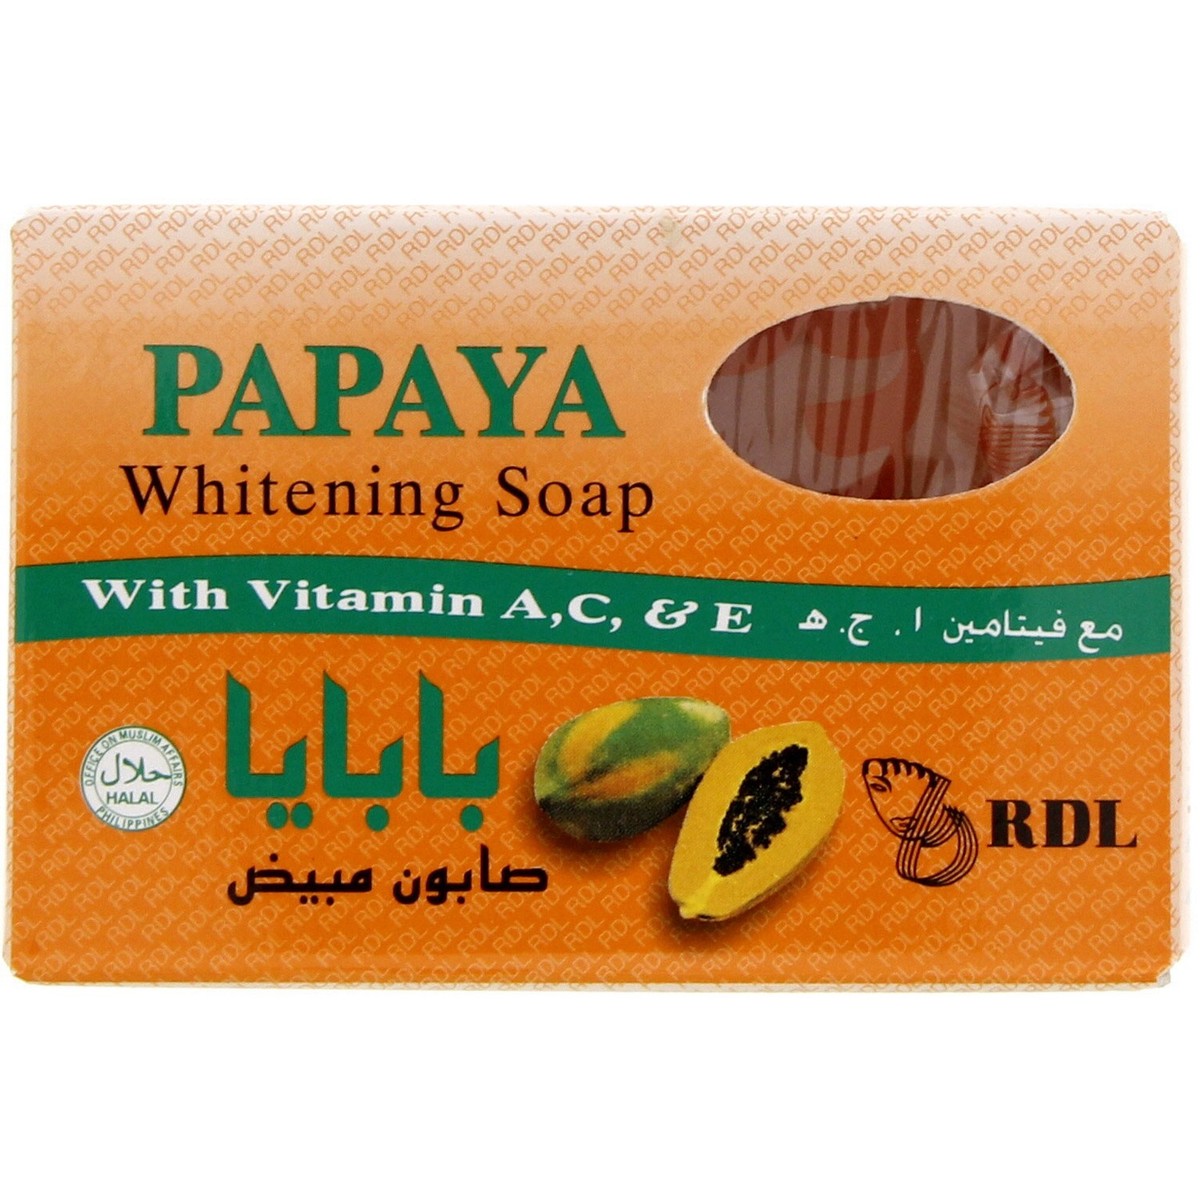 Buy RDL Papaya Whitening Soap 135 g Online at Best Price | Bath Soaps | Lulu UAE in UAE